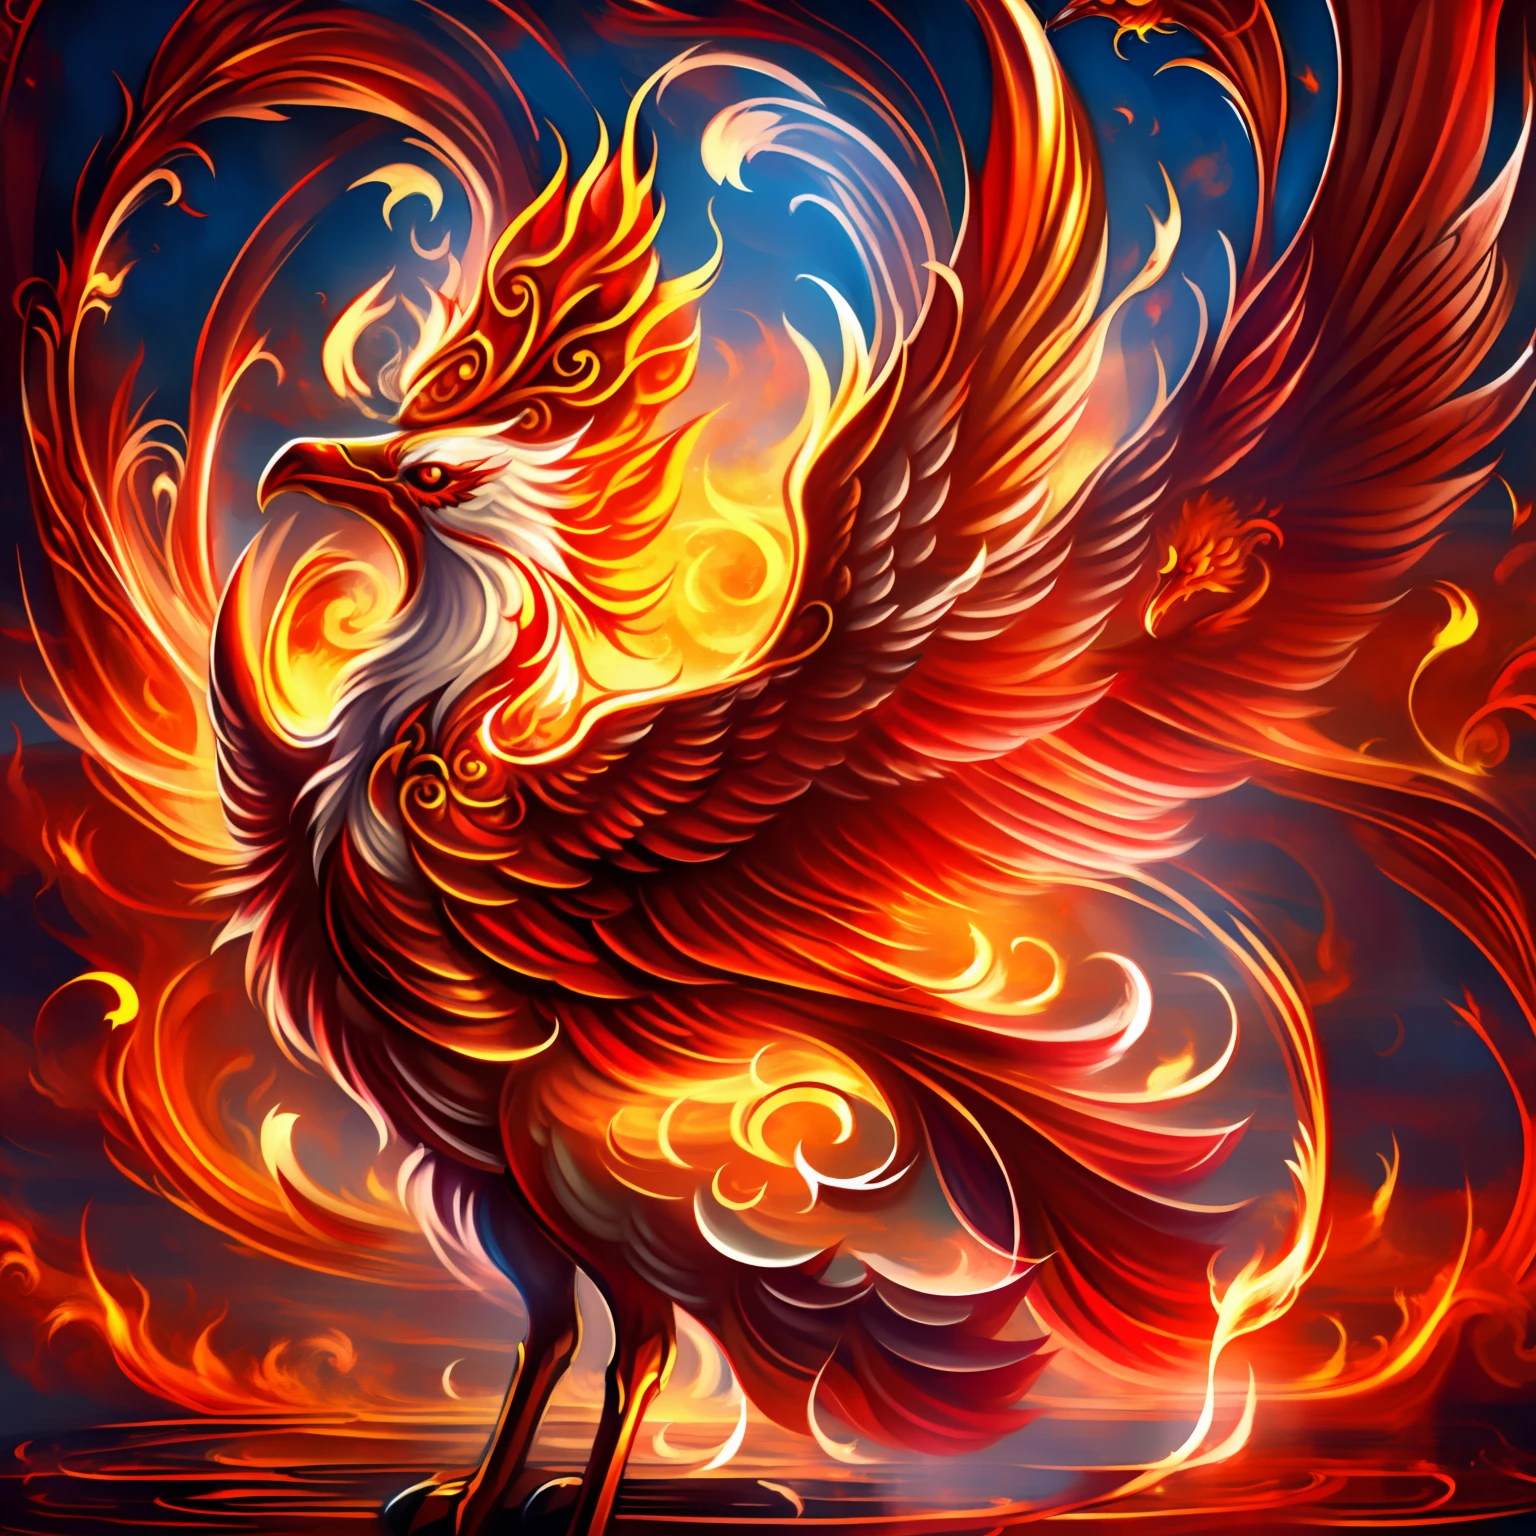 紅鳳凰, 這是吉祥與平安的象徵, 也是忠誠與貞潔的體現, 或是勇敢與智慧的化身, 驅使紅色火焰無盡, 畫得可愛